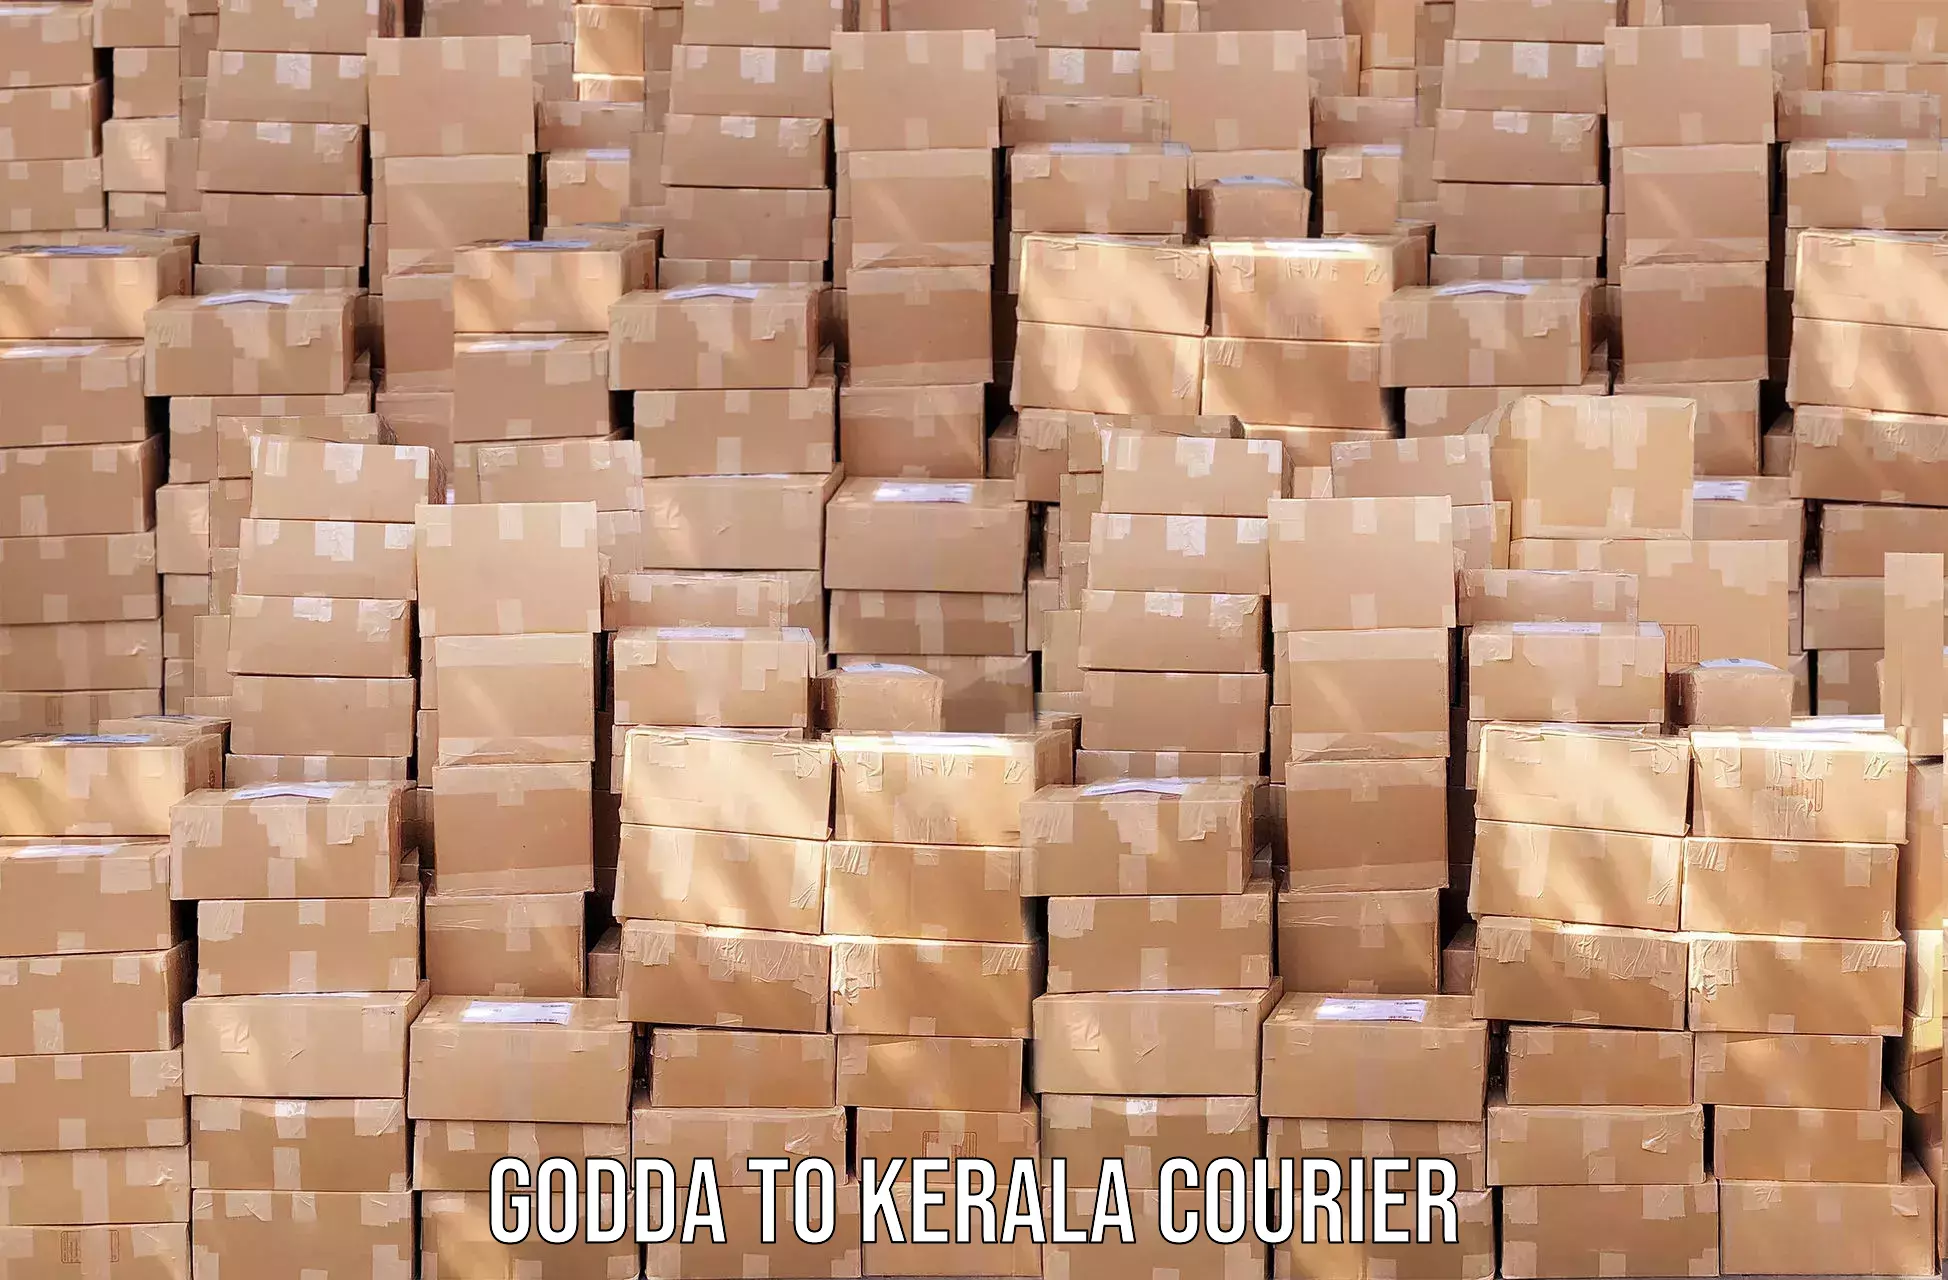 Modern delivery technologies in Godda to Neyyattinkara